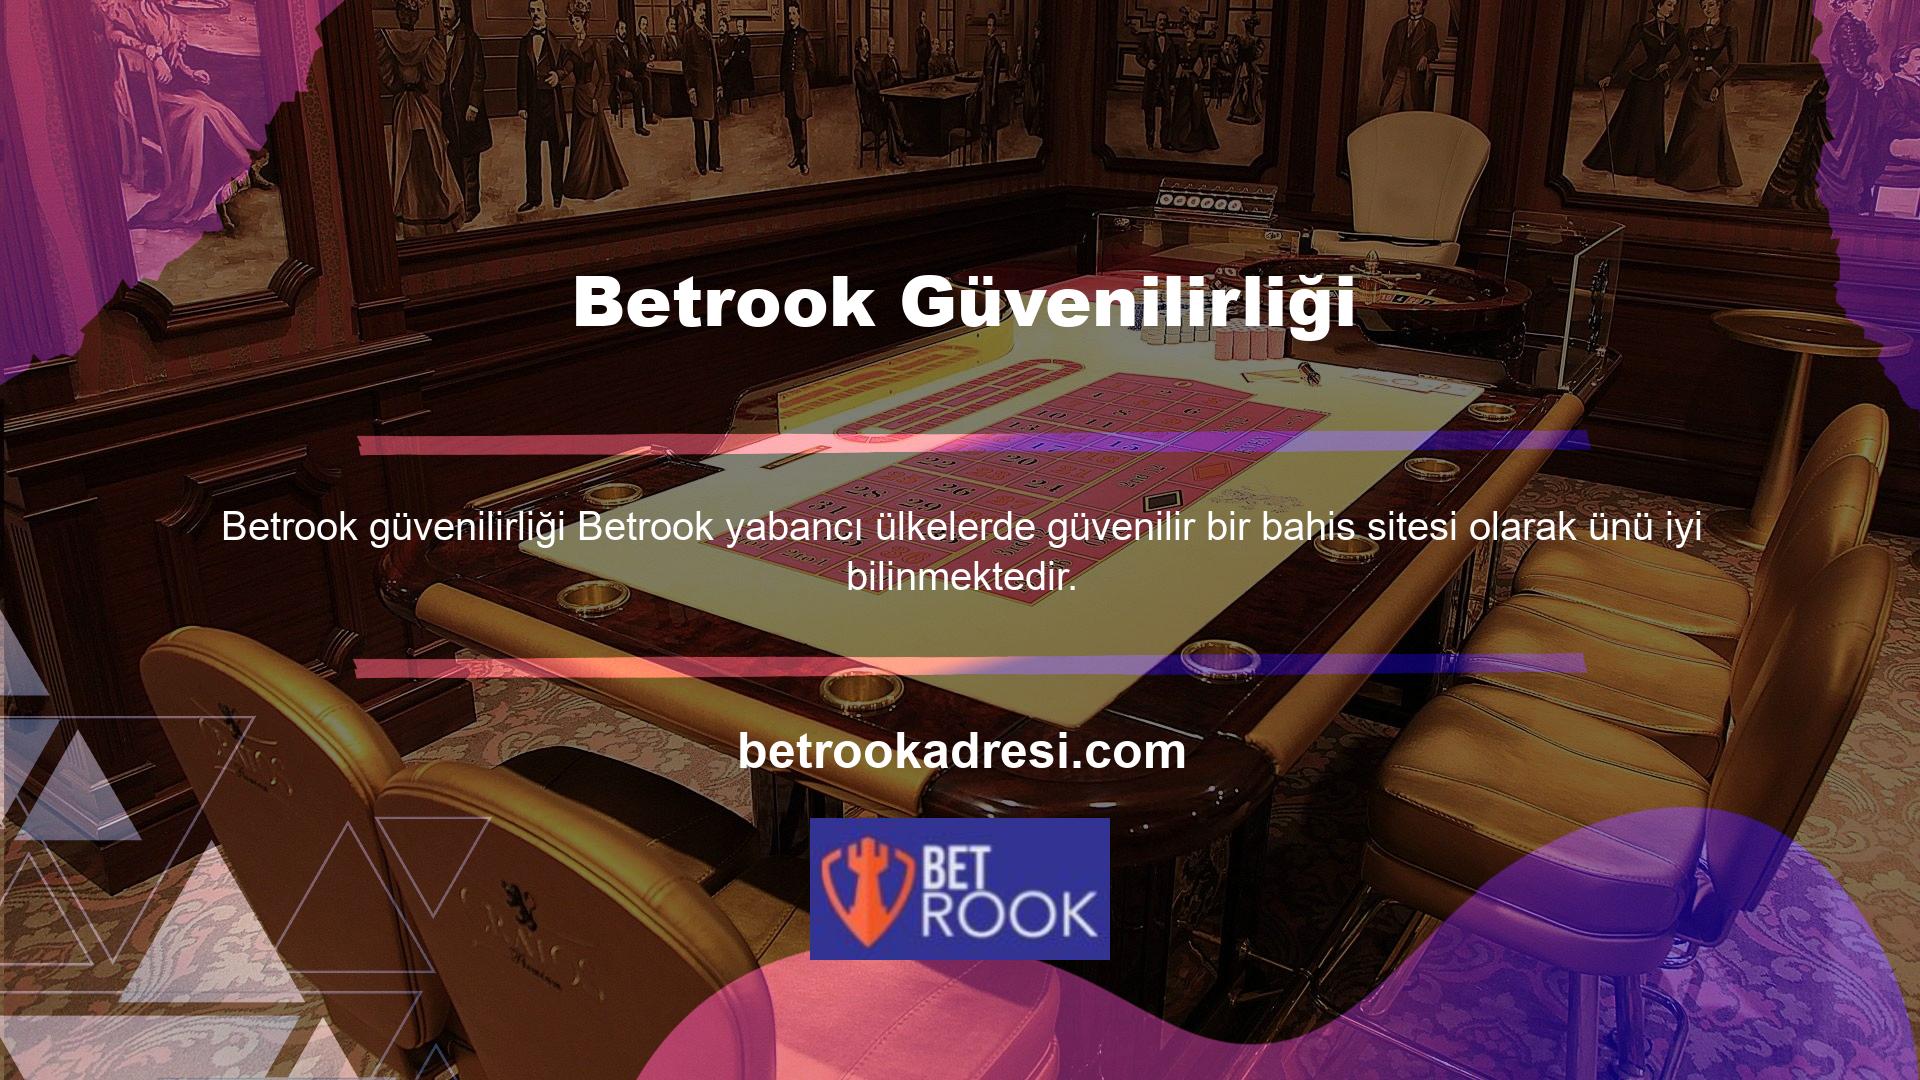 Betrook limited'in bu açıklamanın yapılmasının birçok sebebinden ilki olduğu kesindir Türkiye'deki en iyi yabancı bahis sitesi şüphesiz Betrook olacaktır çünkü en kaliteli hizmeti sunmaktadırlar